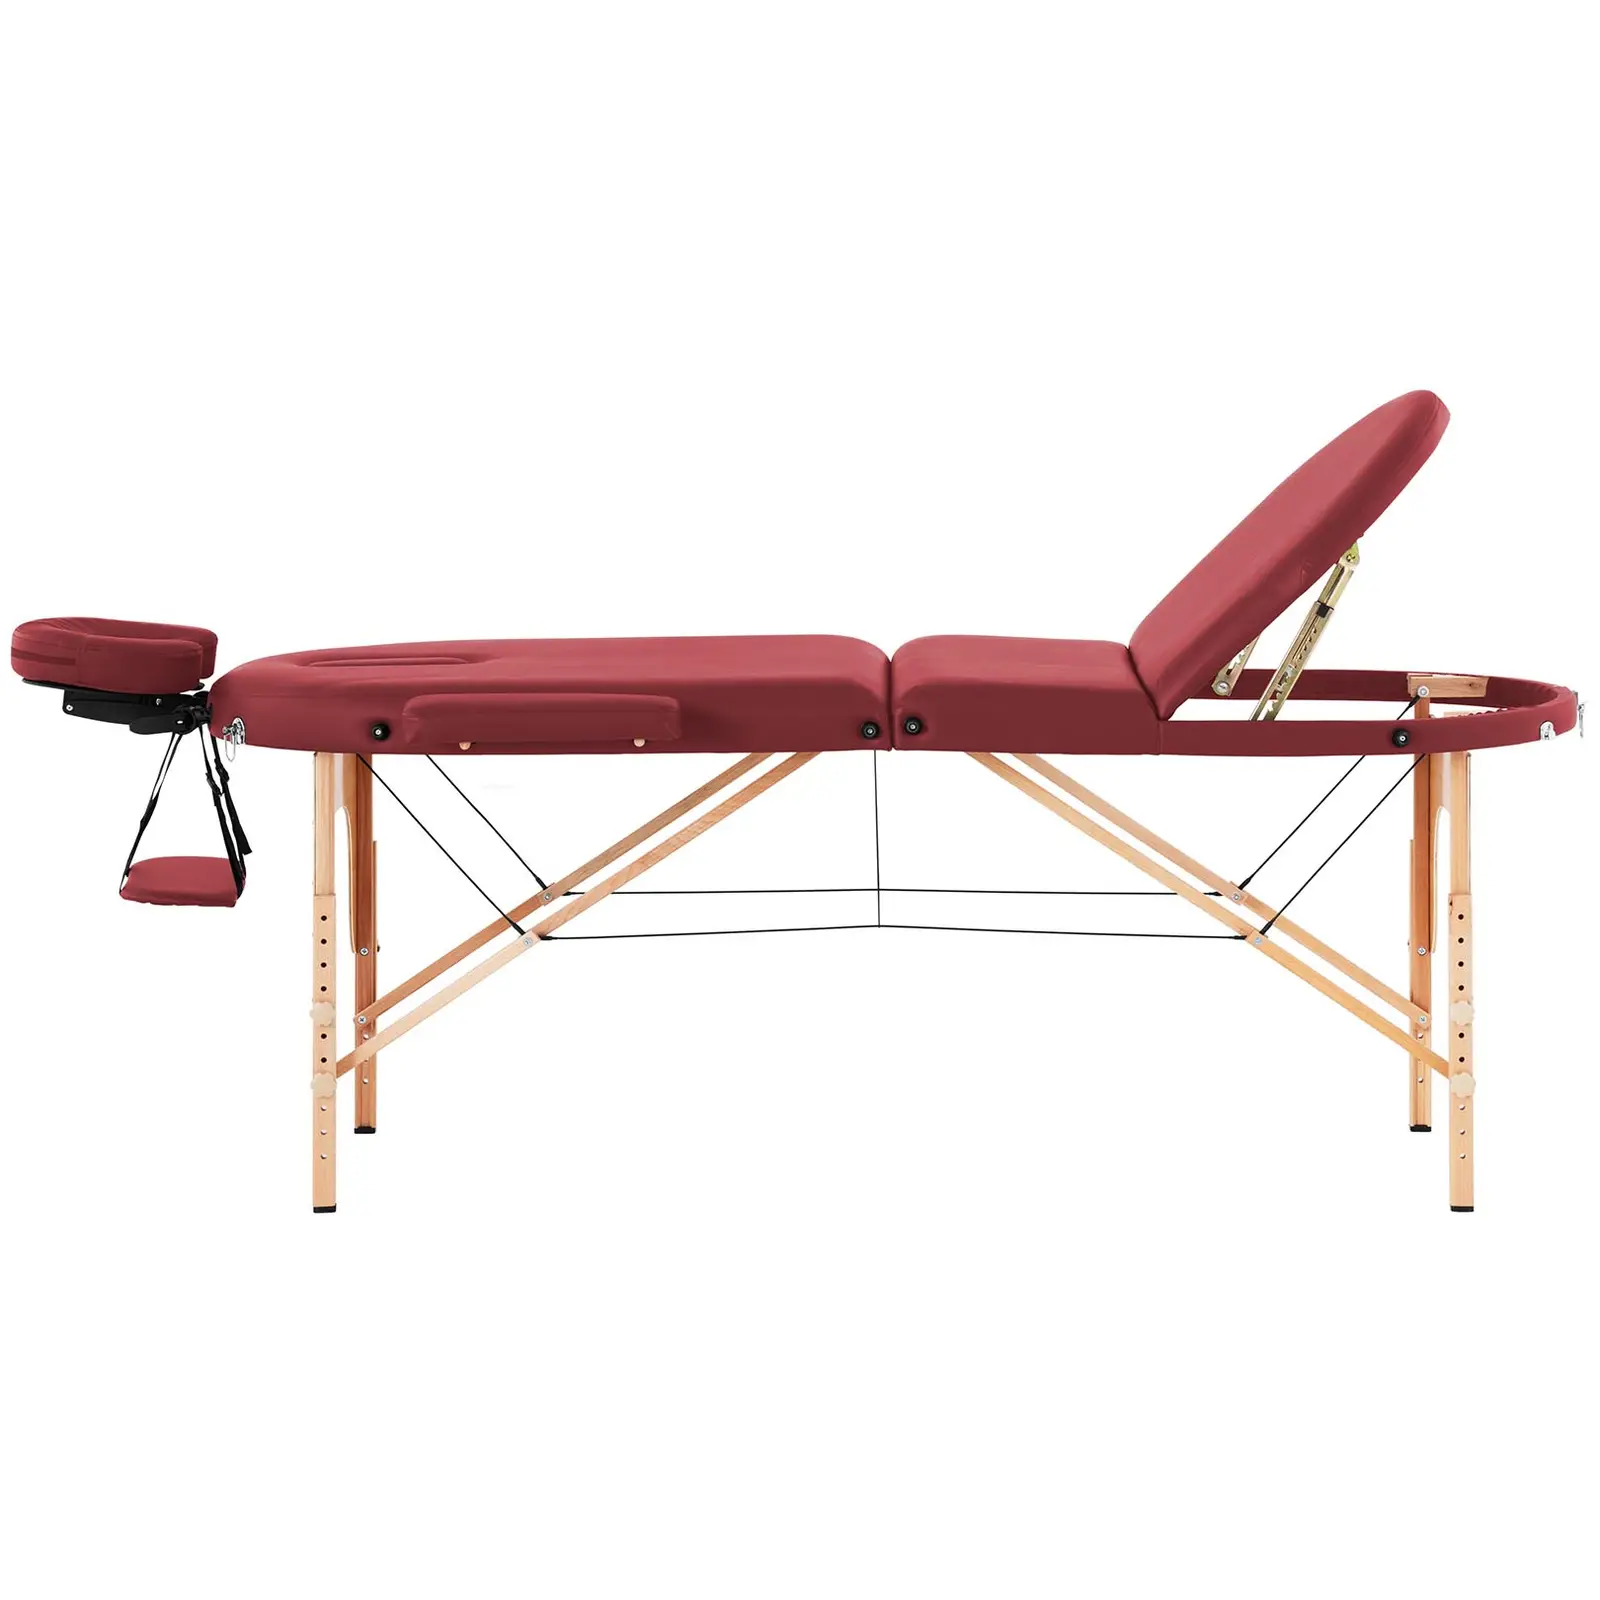 Hopfällbar massagebänk - 185-211 x 70-88 x 63-85  cm - 227 kg - Röd